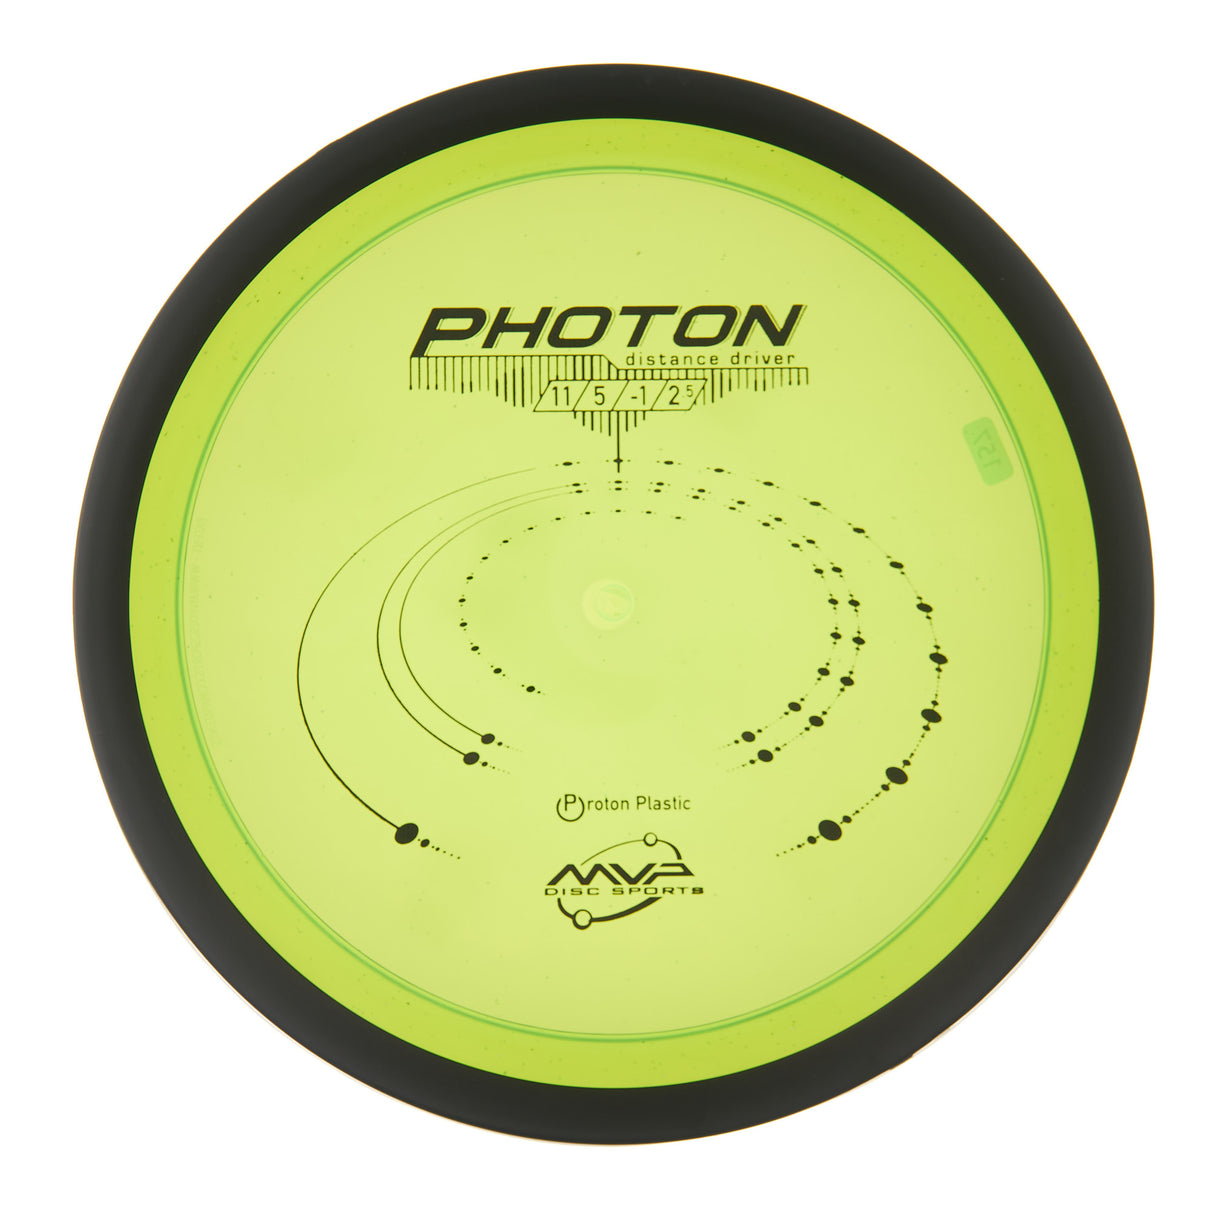 MVP Photon - Proton 159g | Style 0003